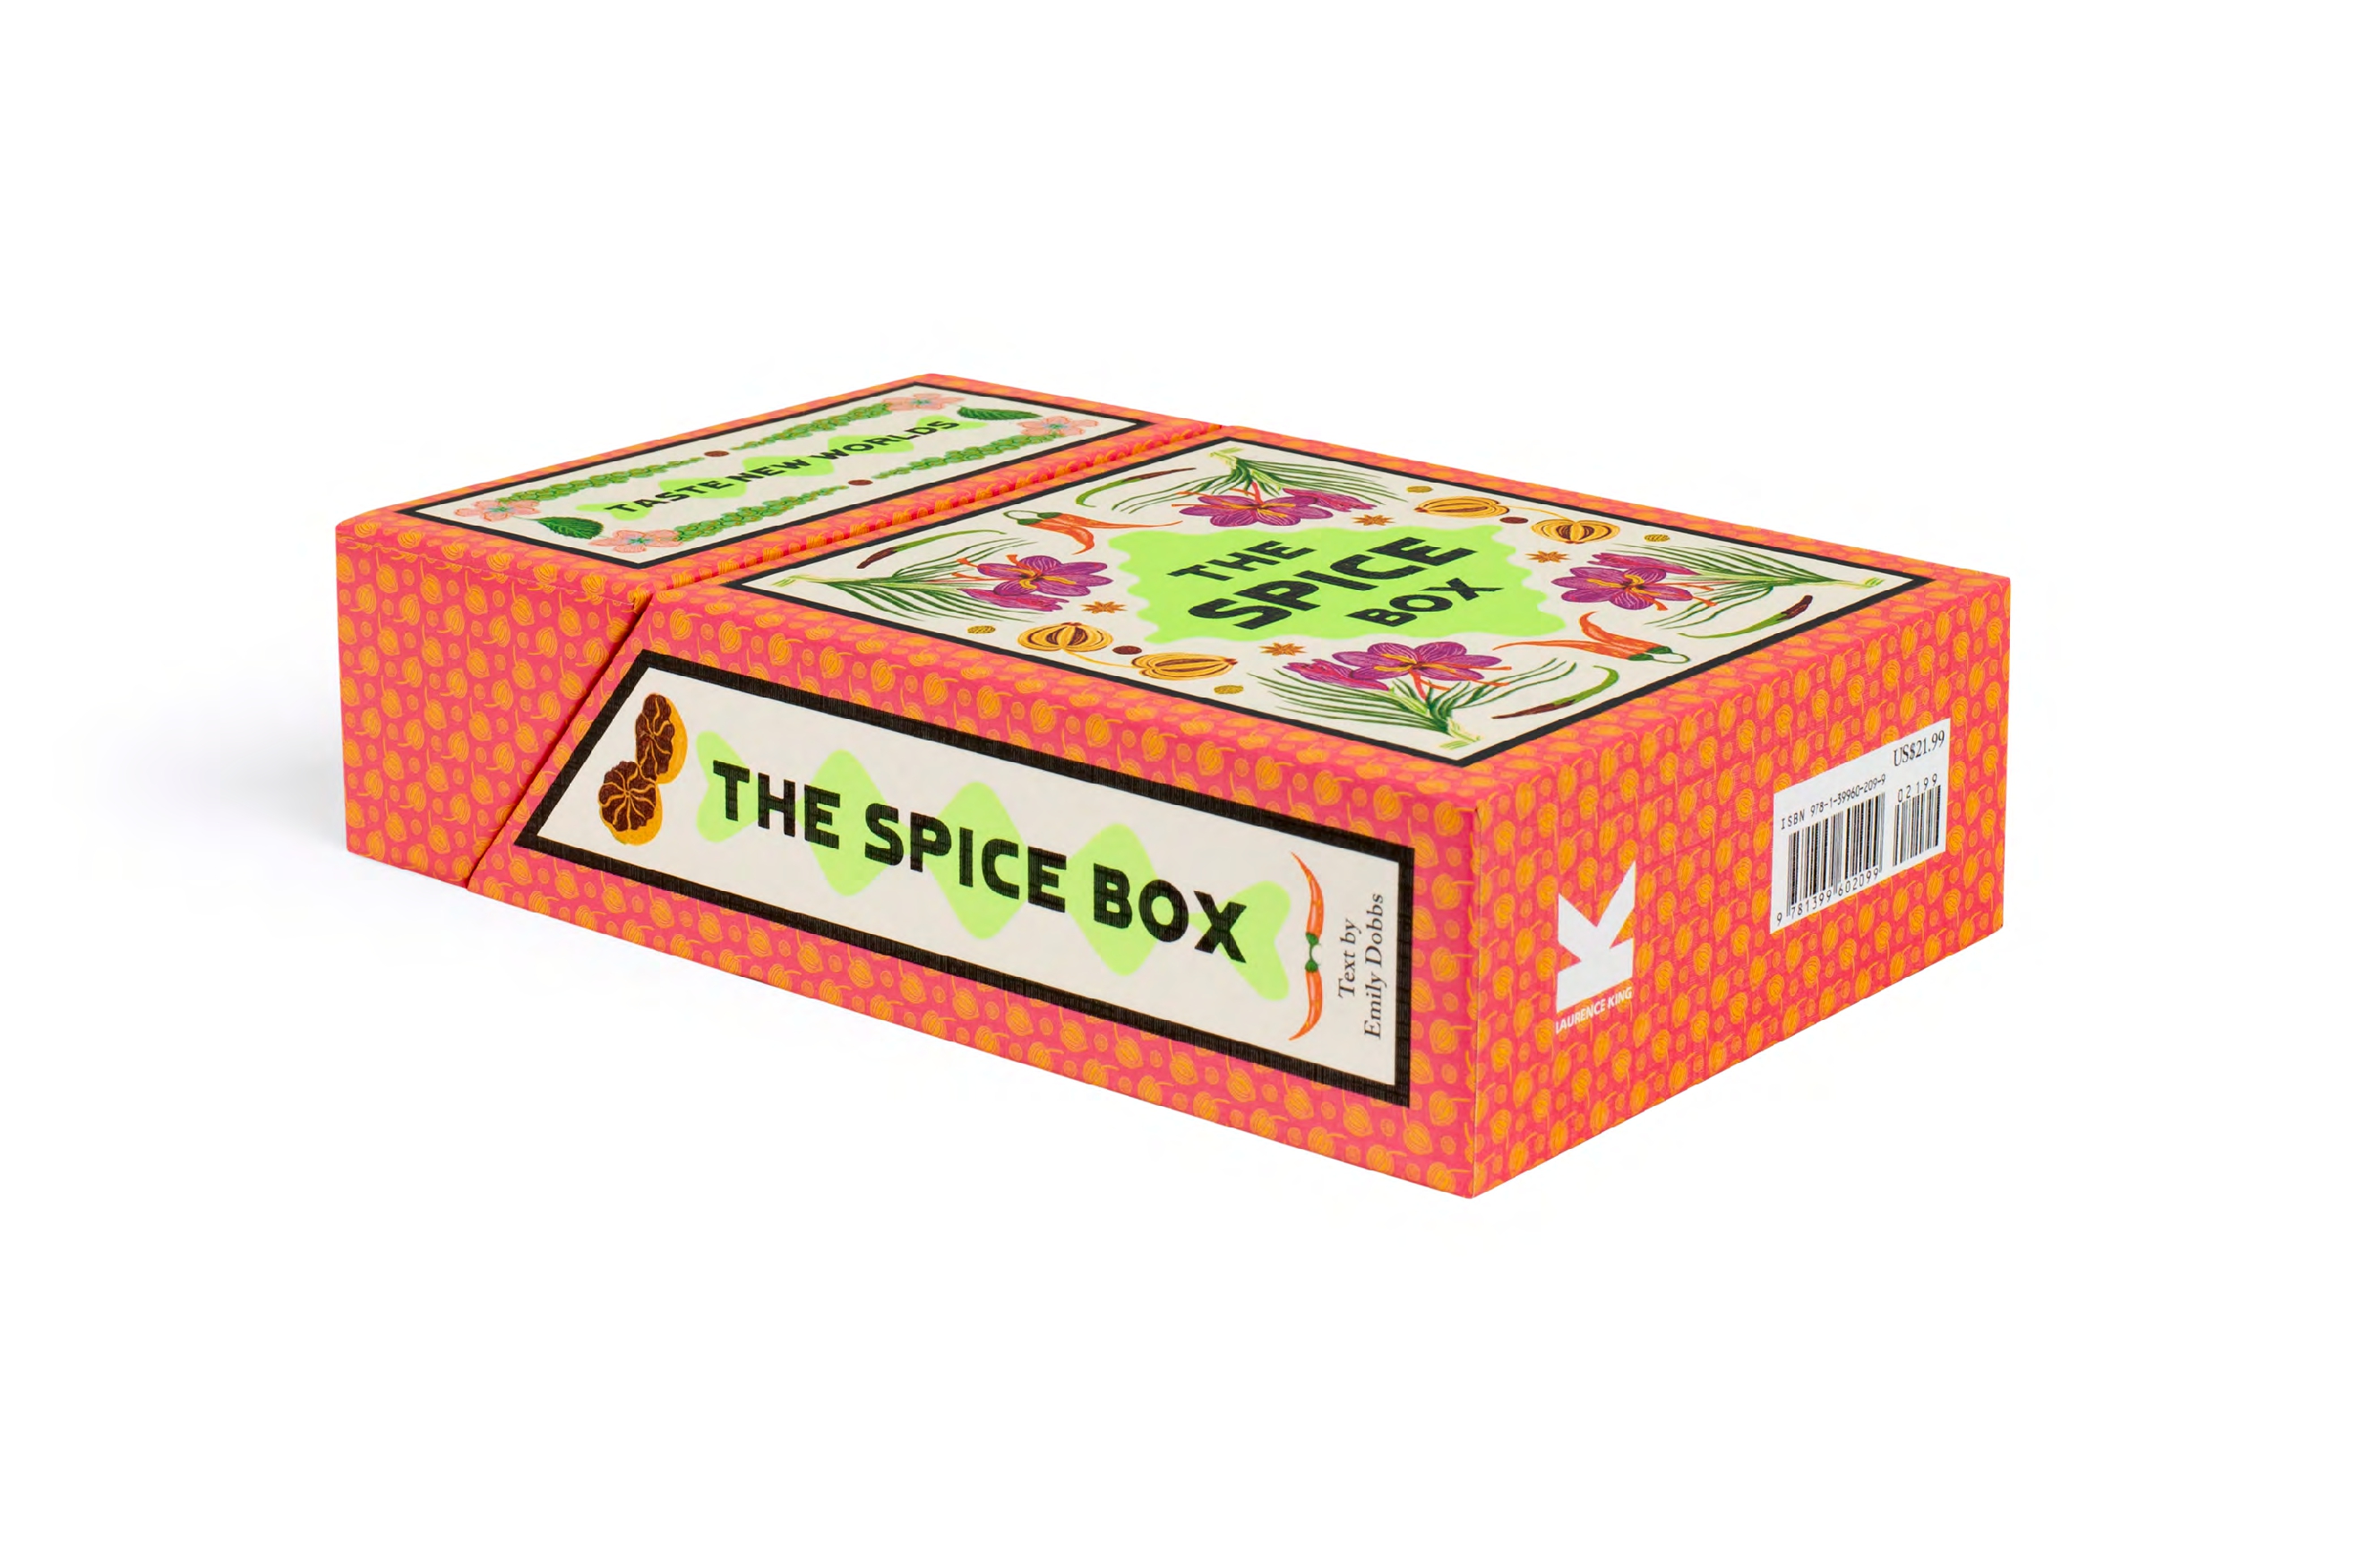 The Spice Box